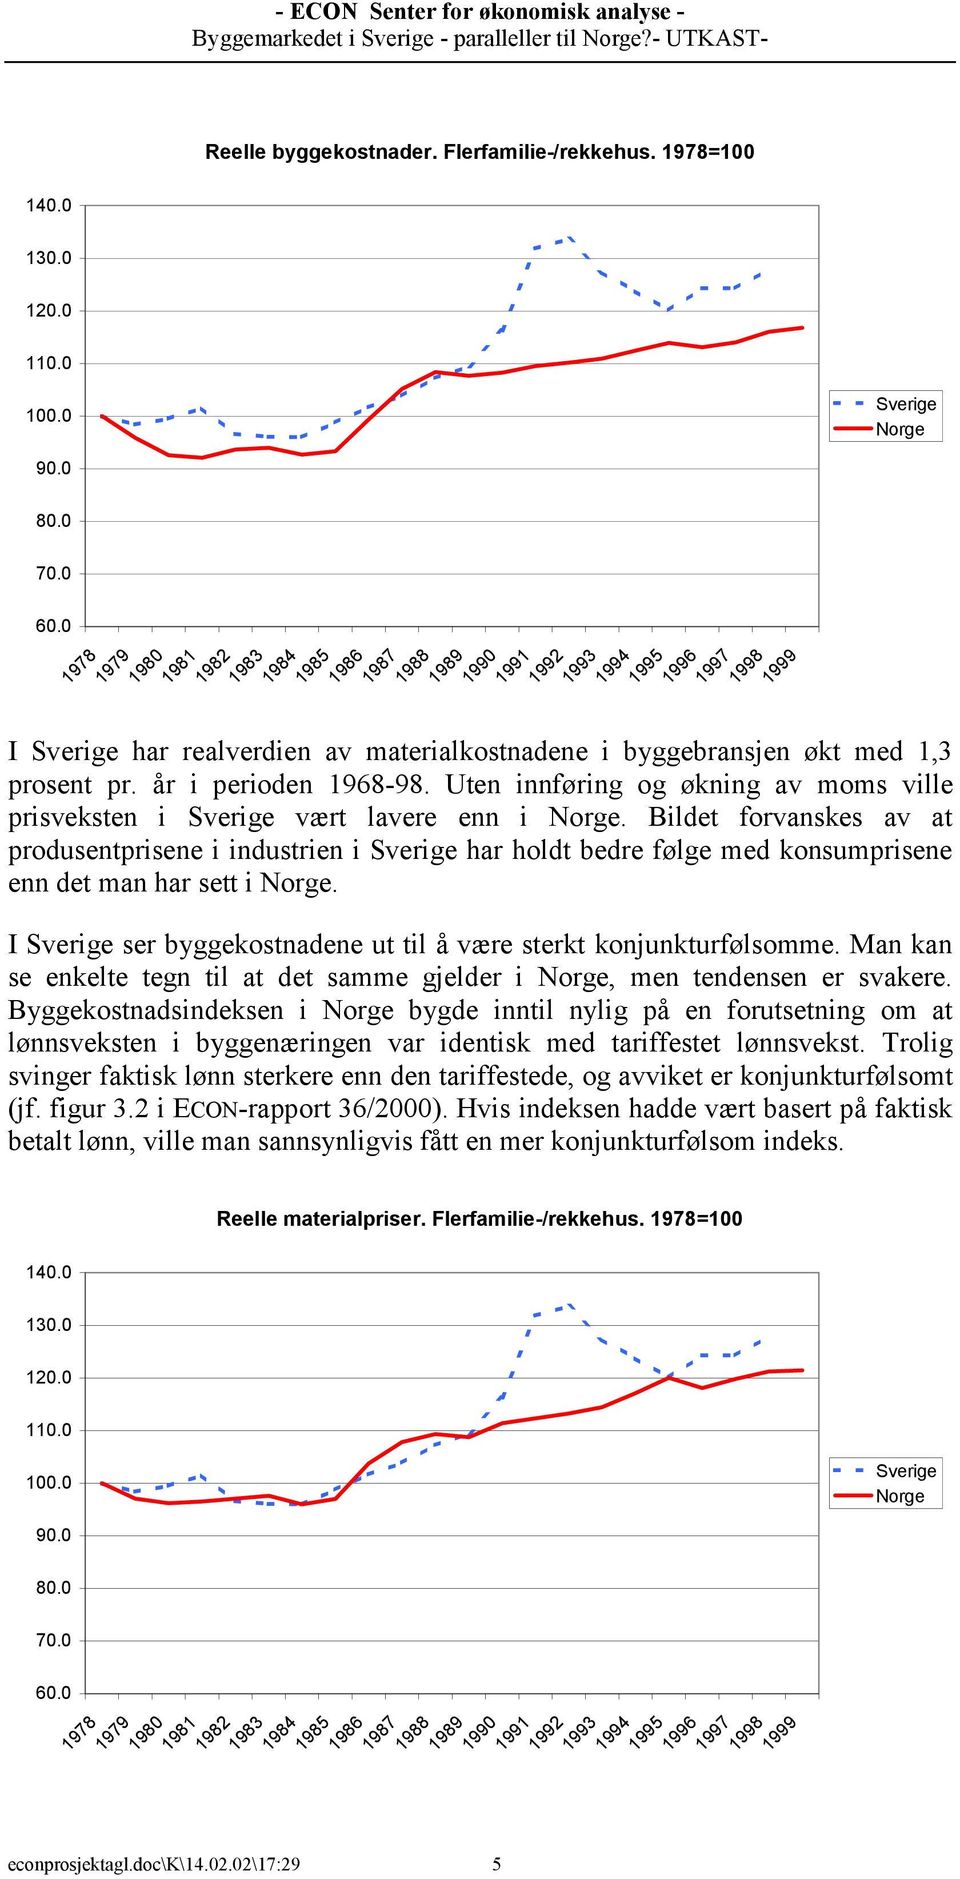 1,3 prosent pr. år i perioden 1968-98. Uten innføring og økning av moms ville prisveksten i Sverige vært lavere enn i Norge.